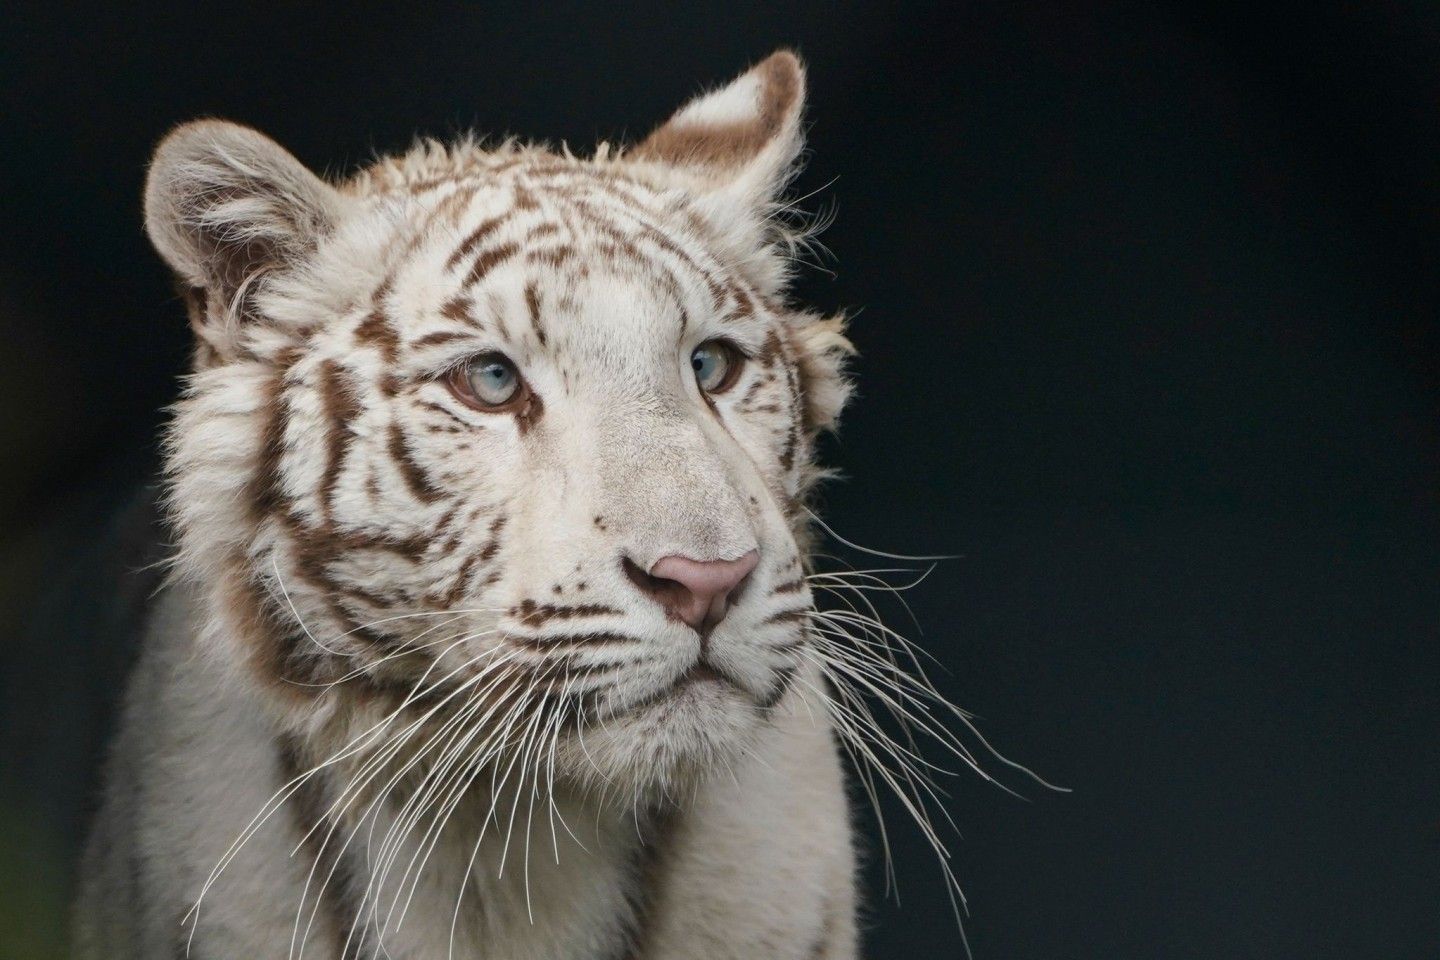  Weißer Tiger Hintergrundbild 1440x960. Neues Gehege für beschlagnahmte Tigerdame